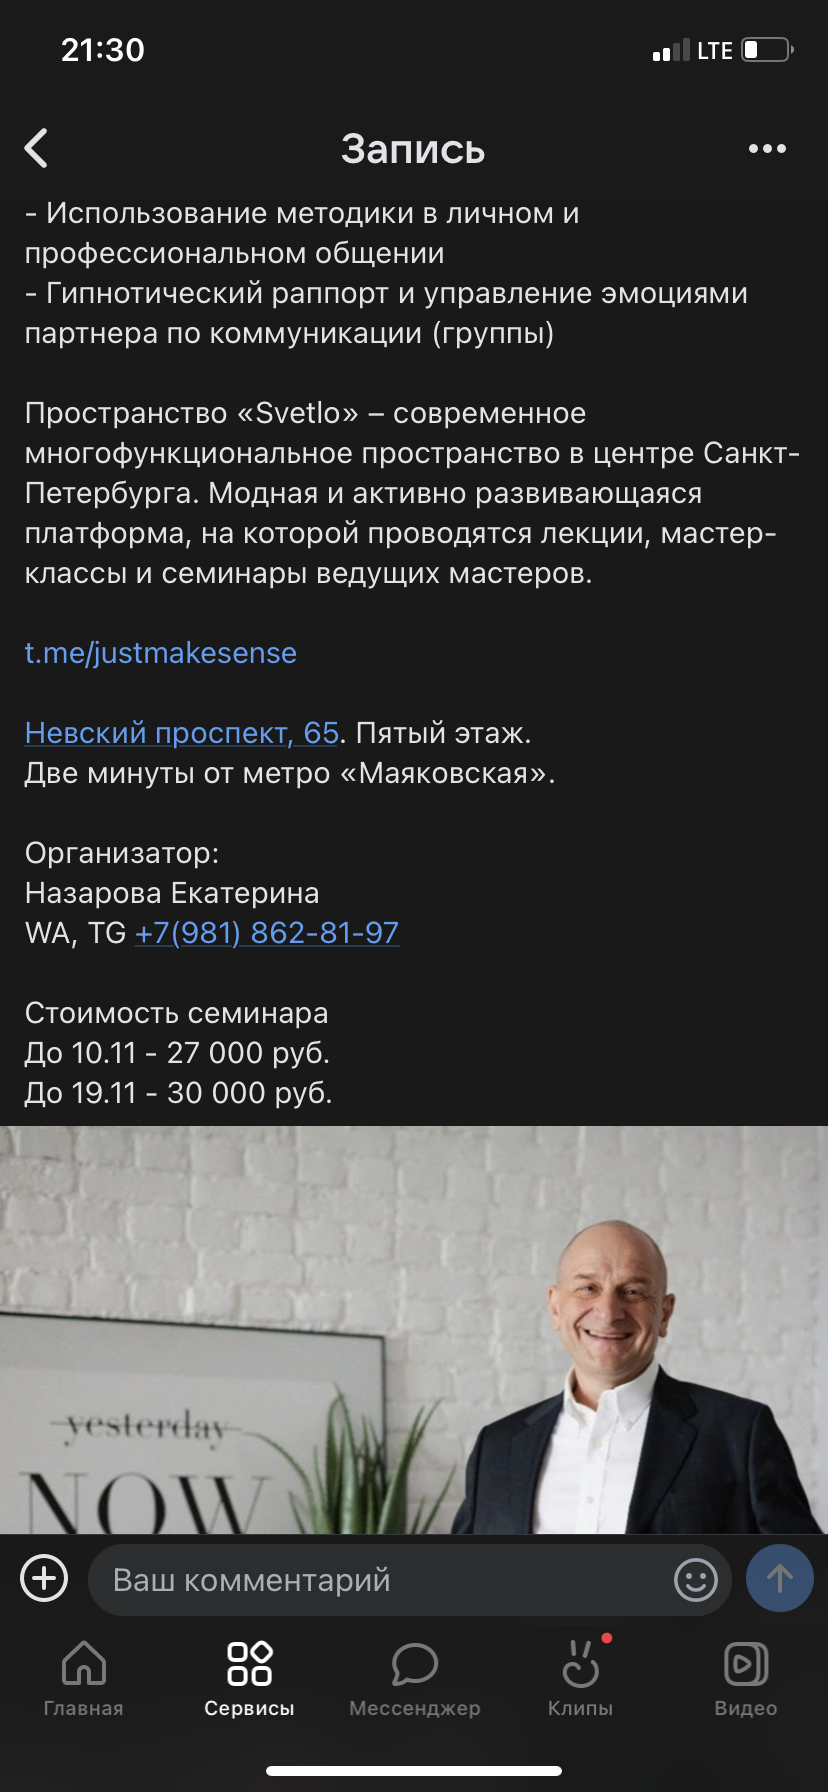 Рекламный пост в ВК: примеры, как сделать и оформить пост ВКонтакте